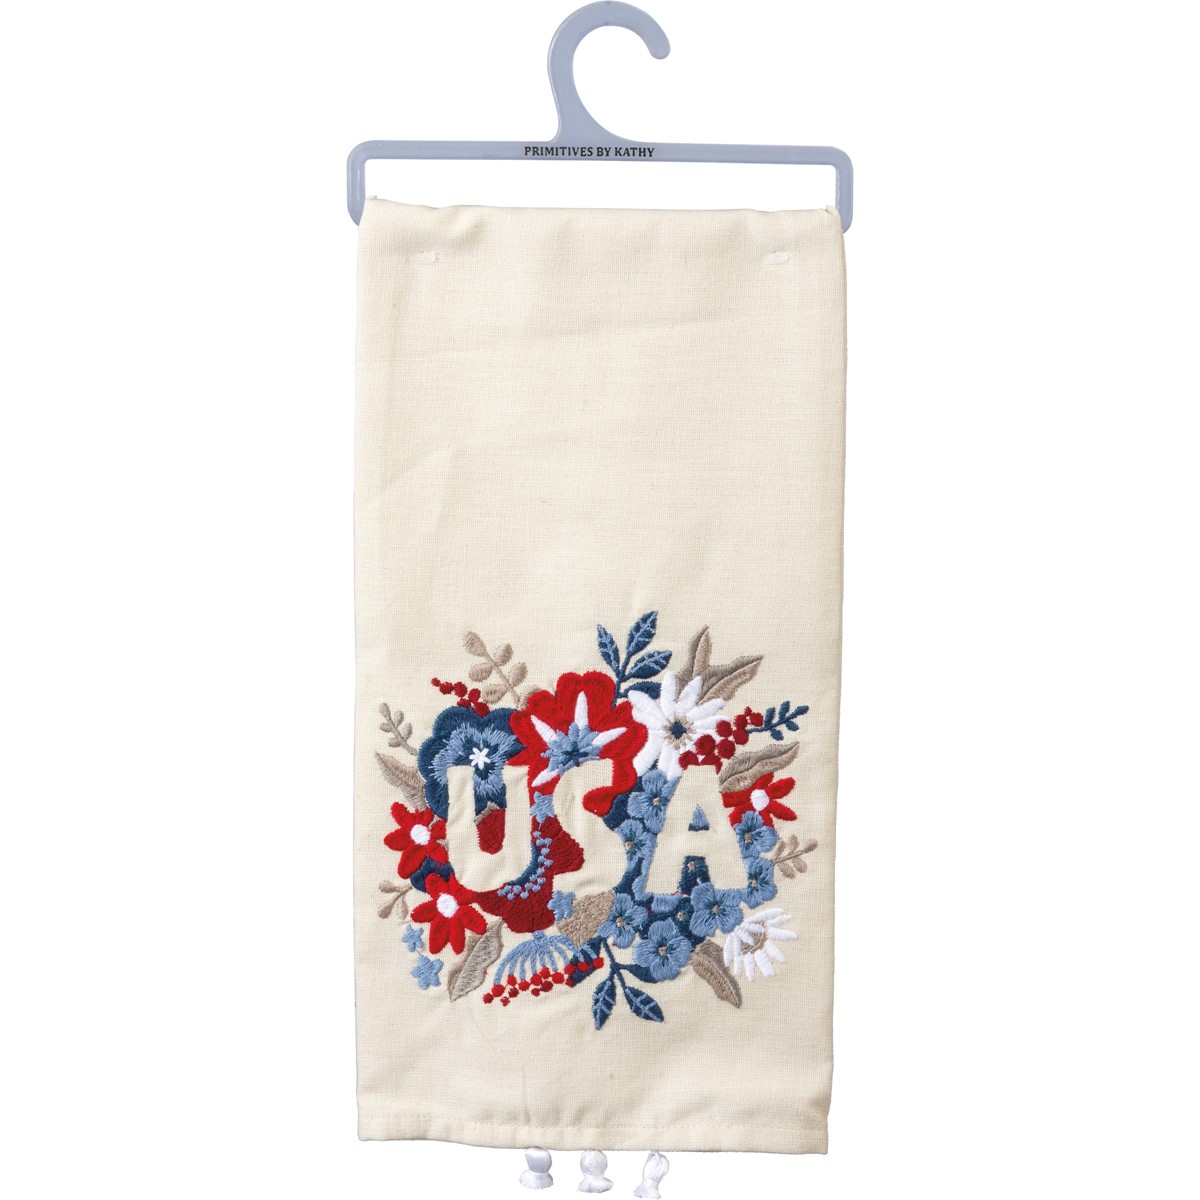 Kitchen Towel - Floral USA - 20" x 26" - Cotton, Linen